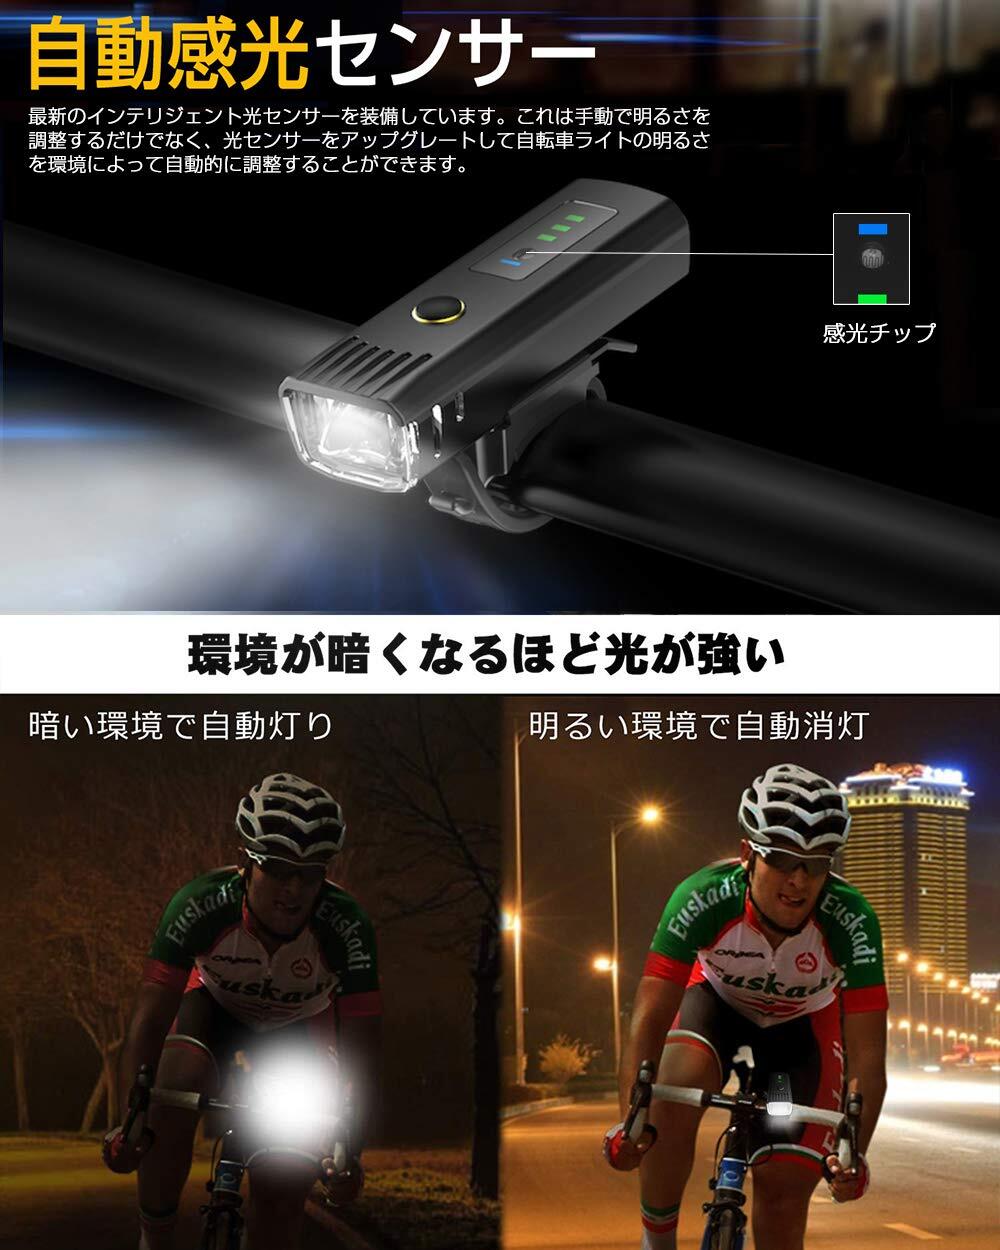 ロードバイク 自転車 ライト 明るい ledライト ヘッドライト フロントライト USB充電式 懐中電灯 自動点灯 マウンテンバイク クロスバイク サイクルライト ハイビーム ロービーム サイクリング